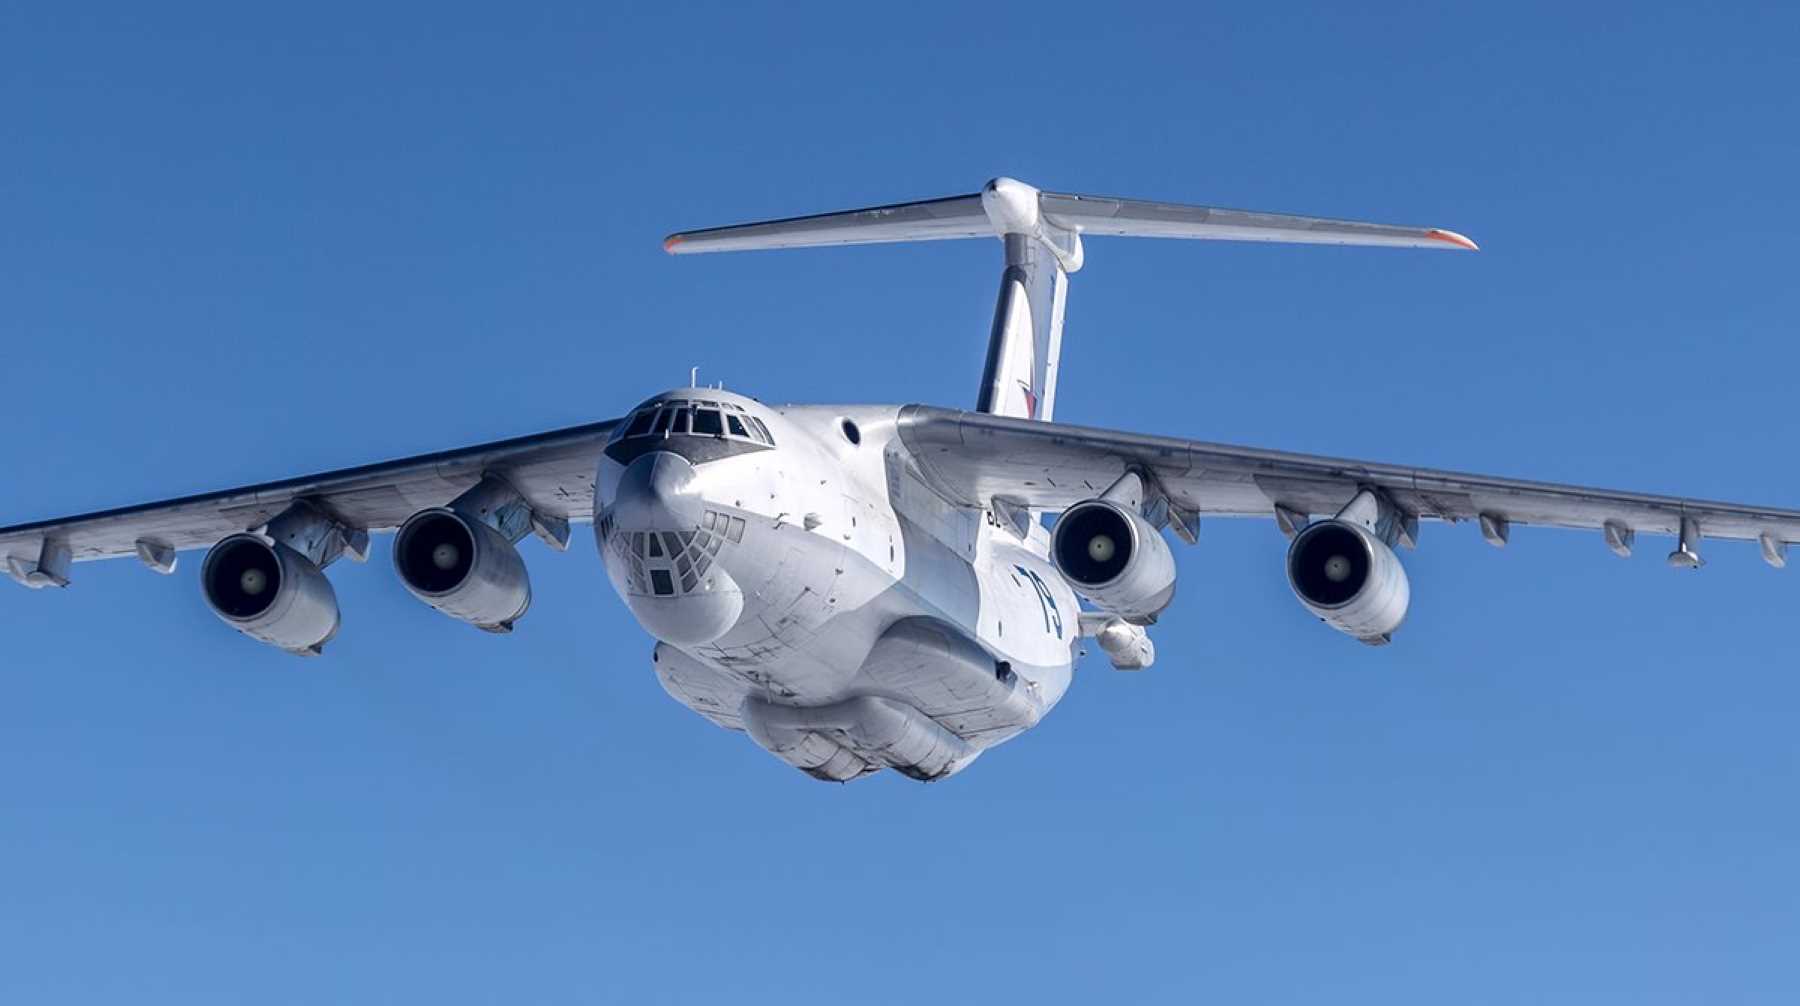 Cейчас воздушное судно вырабатывает топливо Фото: © Global Look Press / Министерство обороны